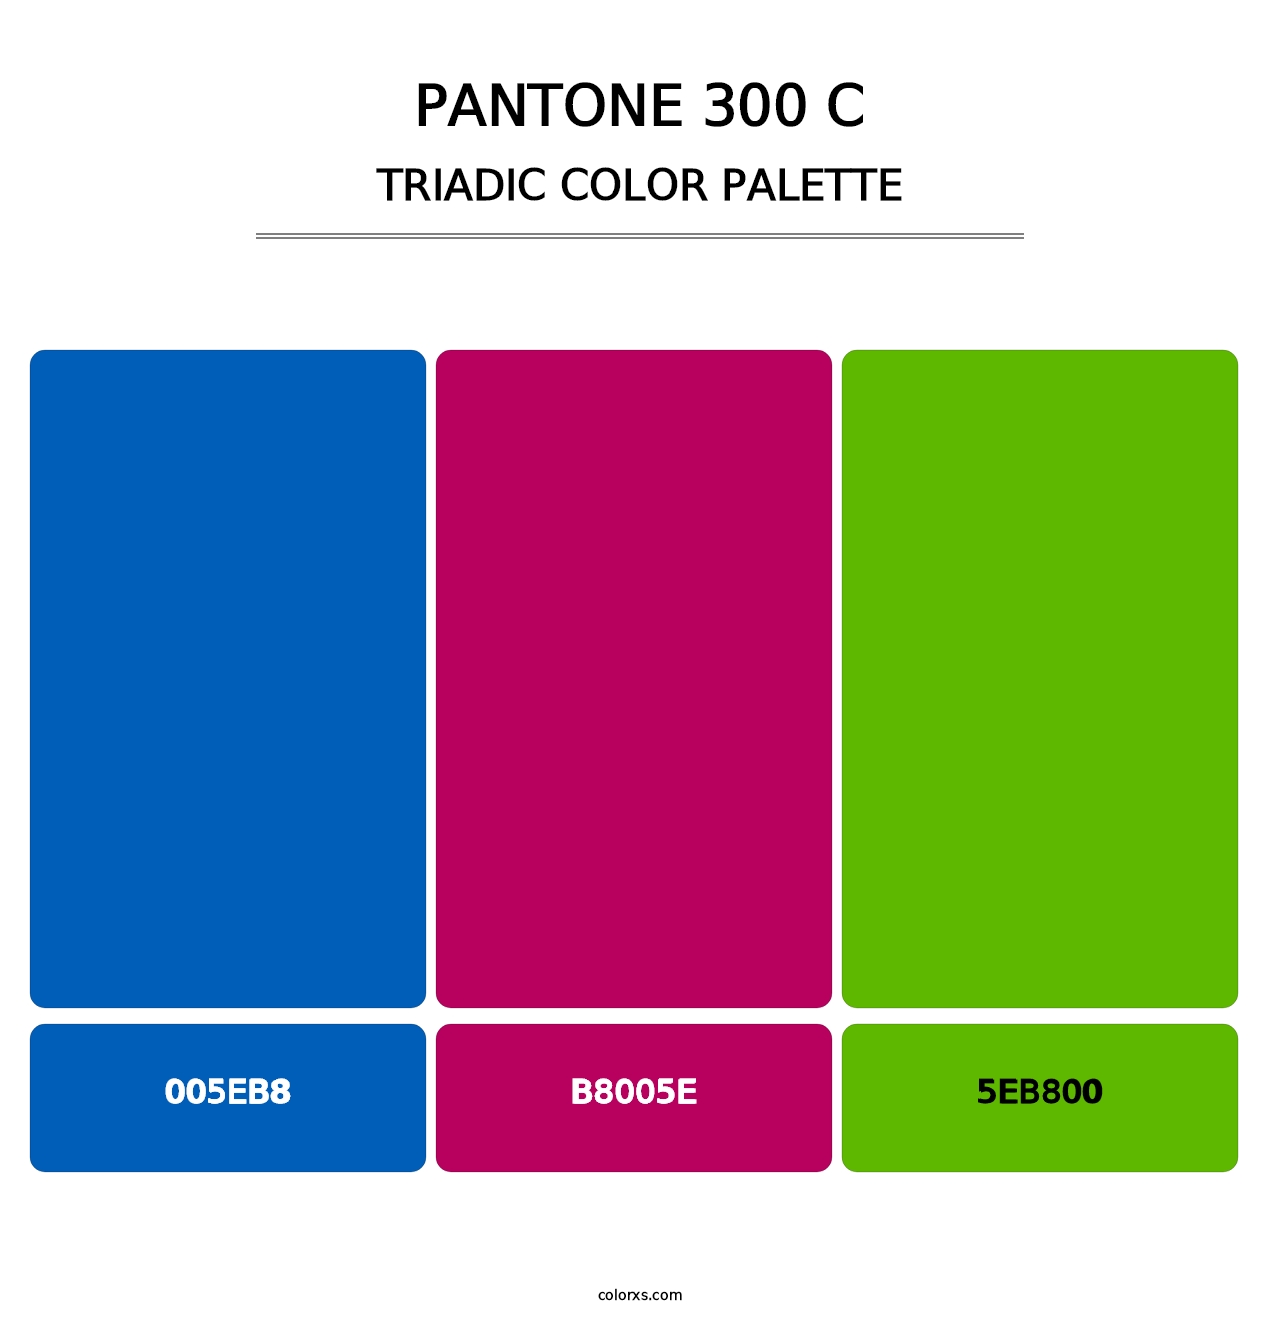 PANTONE 300 C - Triadic Color Palette